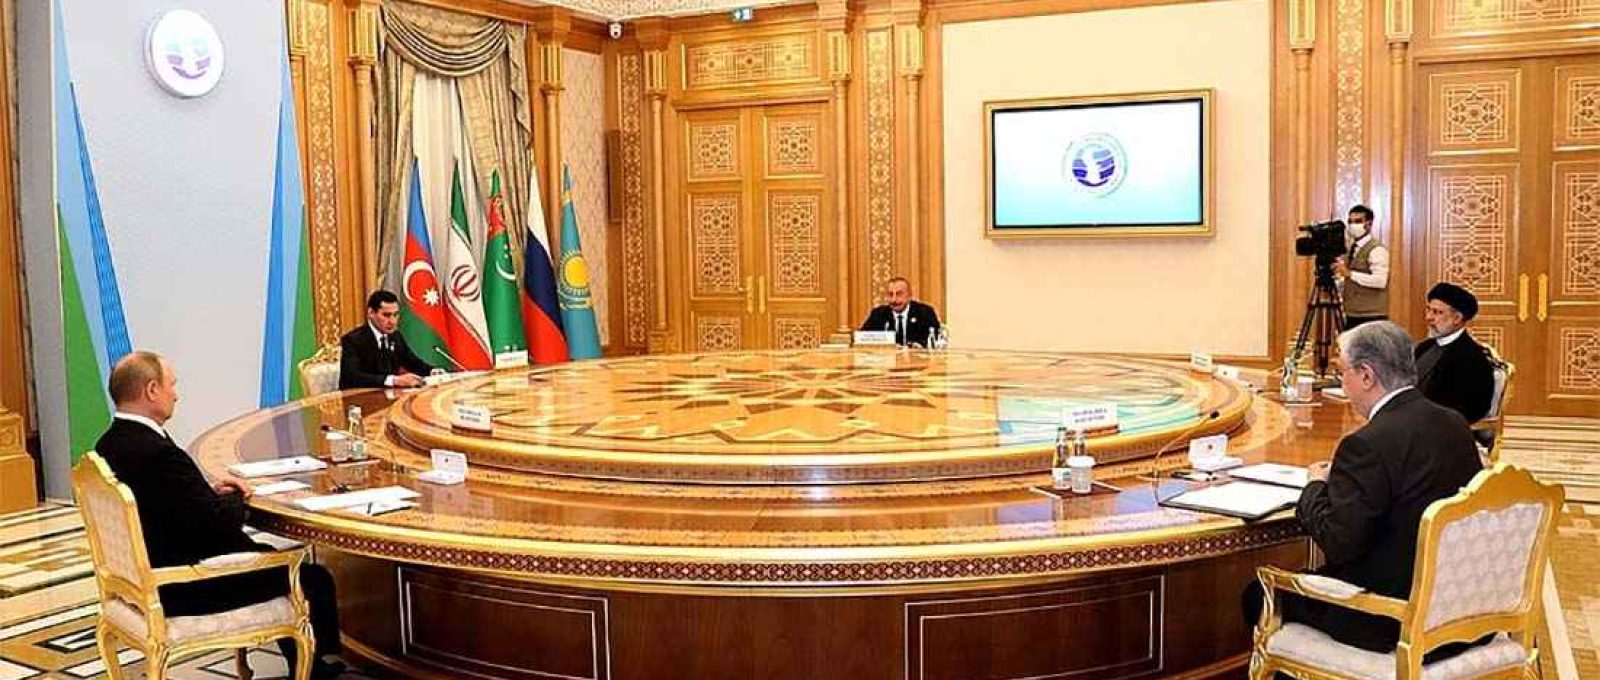 Reunião restrita aos chefes de estado participantes da 6ª Cúpula do Cáspio (Serviço de Imprensa da Presidência do Turcomenistão).